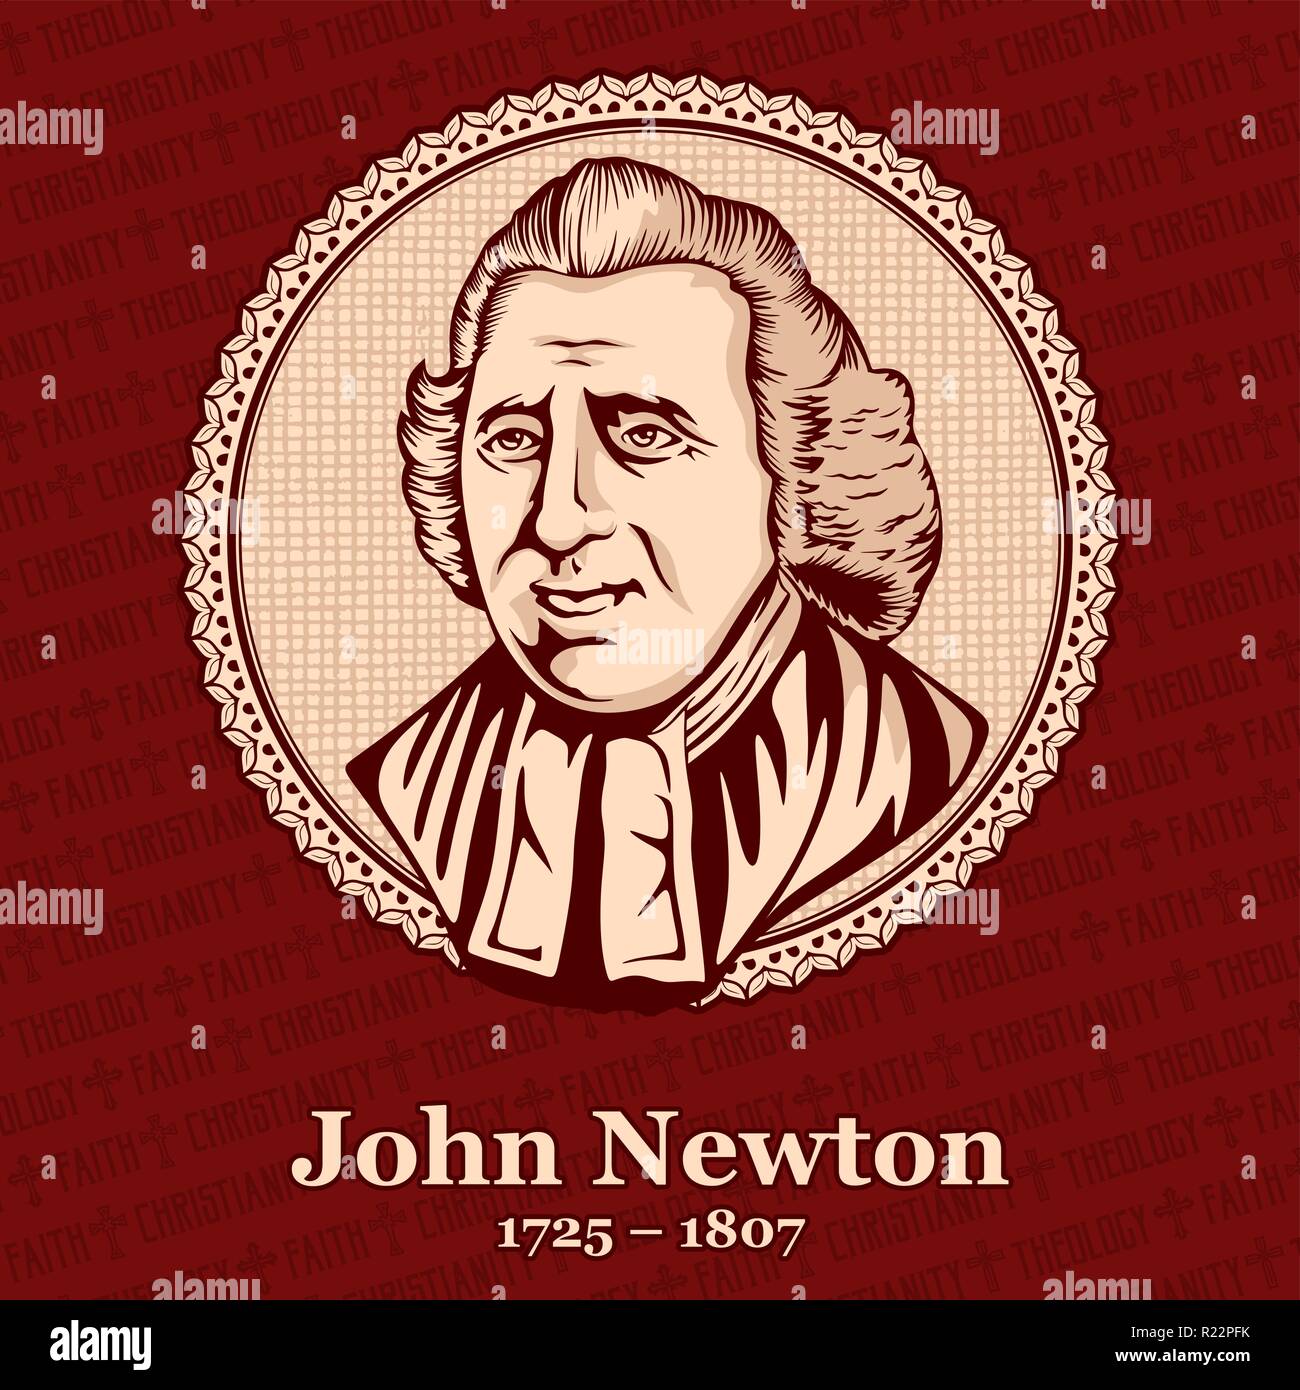 John Newton (1725 - 1807) était un pasteur anglican qui a servi comme un marin dans la Marine royale pendant une période et, plus tard, le capitaine de l'esclave s Illustration de Vecteur